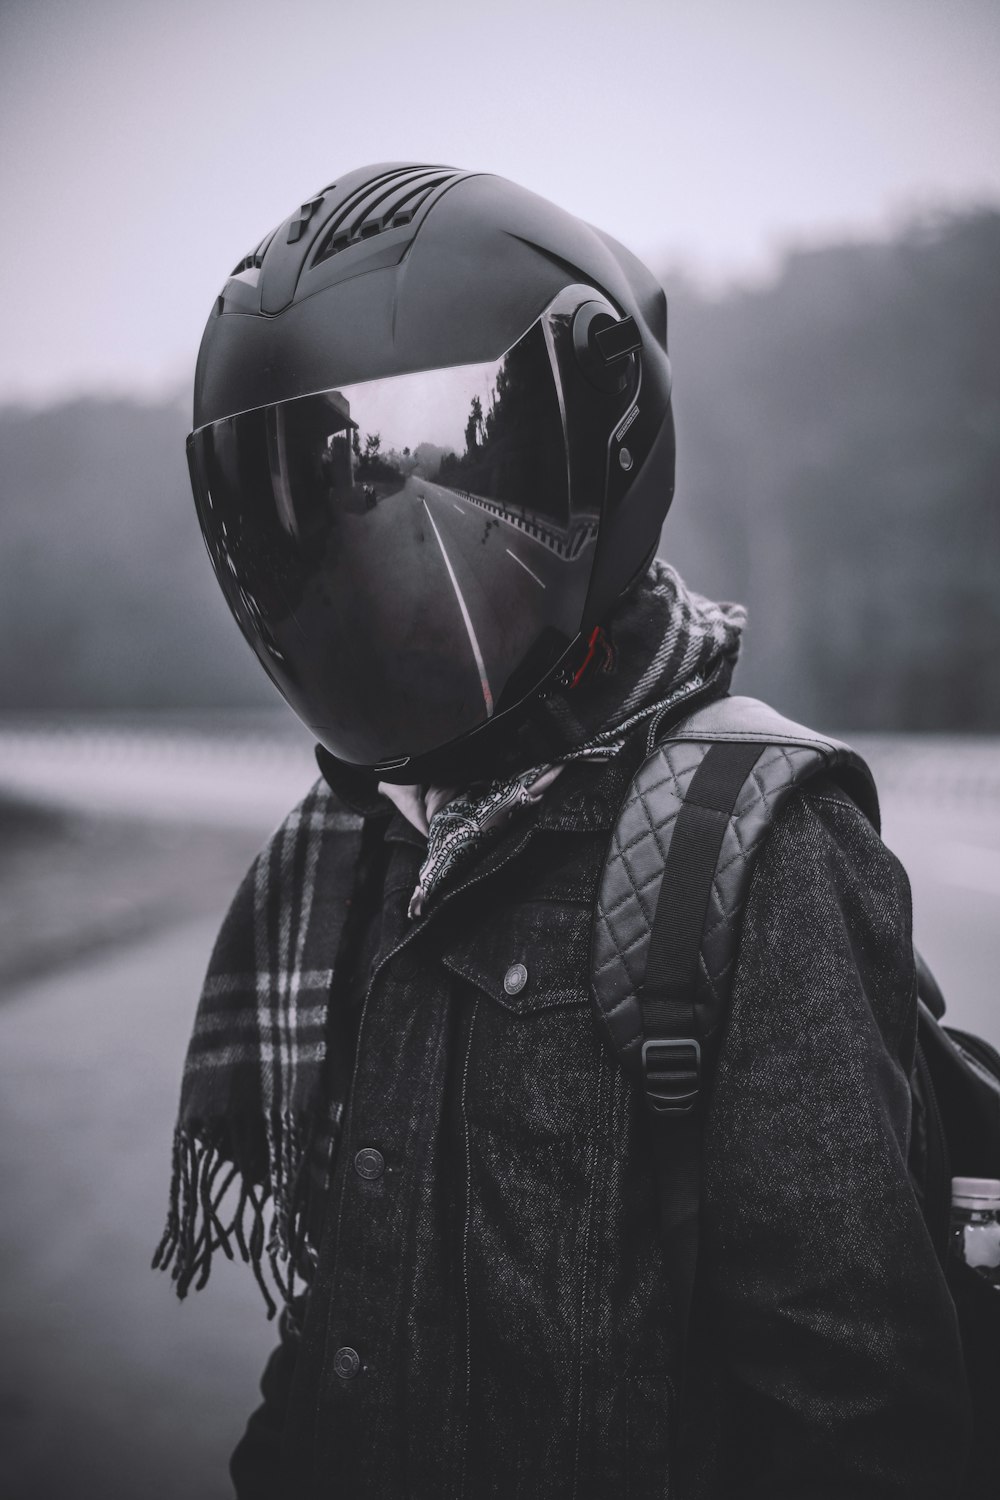 회색조 사진에서 헬멧과 배낭을 착용 한 사람